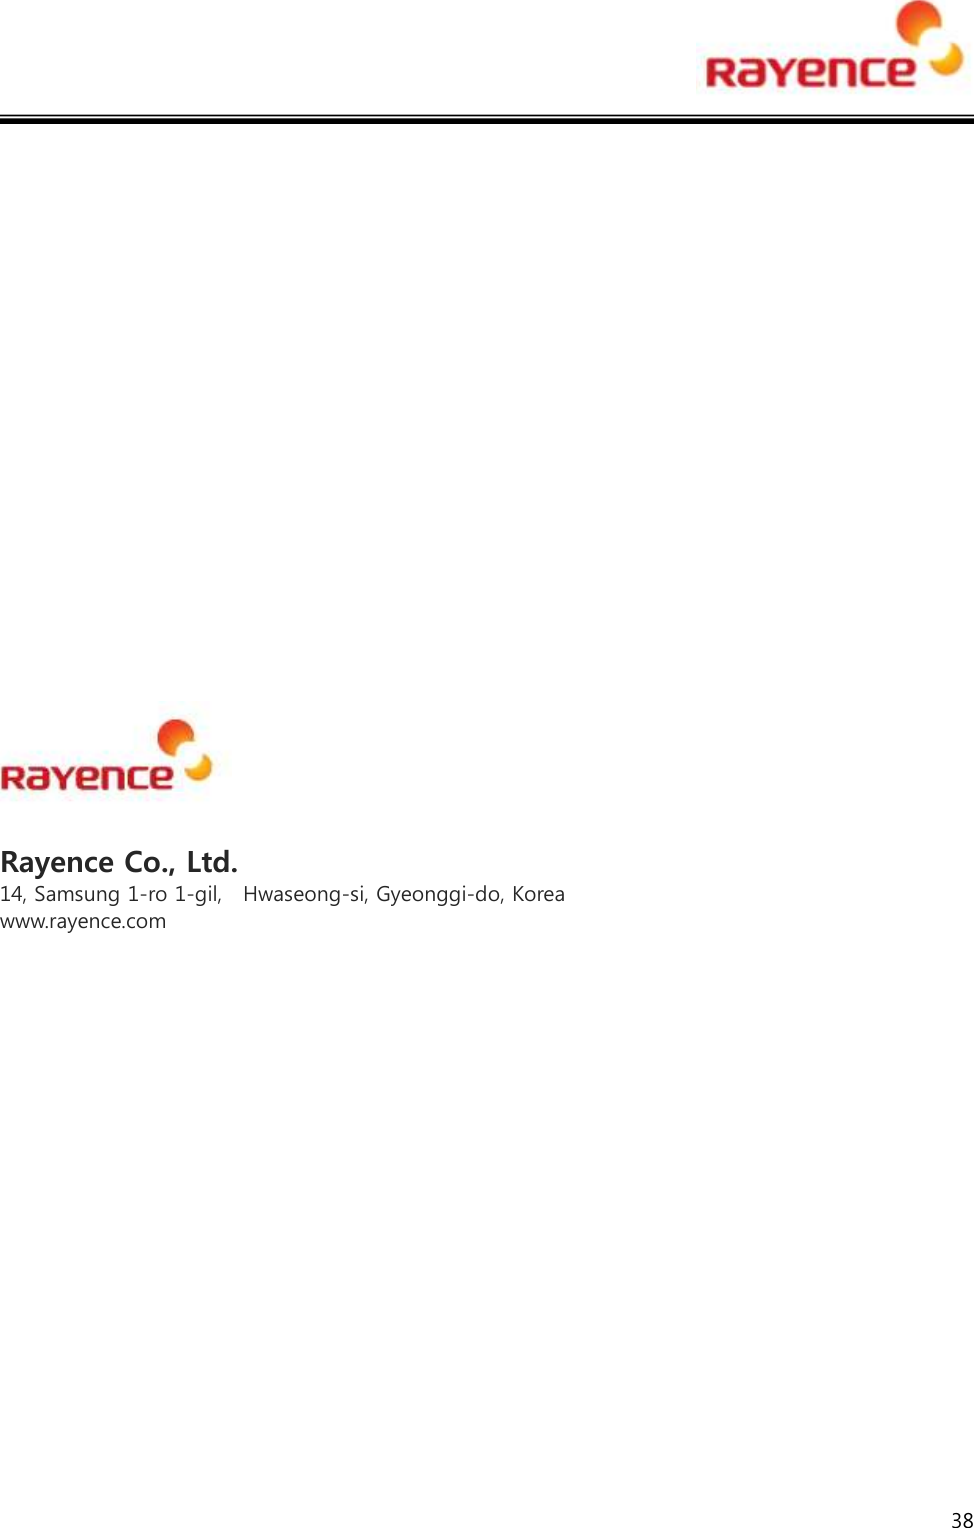  38                    Rayence Co., Ltd. 14, Samsung 1-ro 1-gil,   Hwaseong-si, Gyeonggi-do, Korea www.rayence.com  